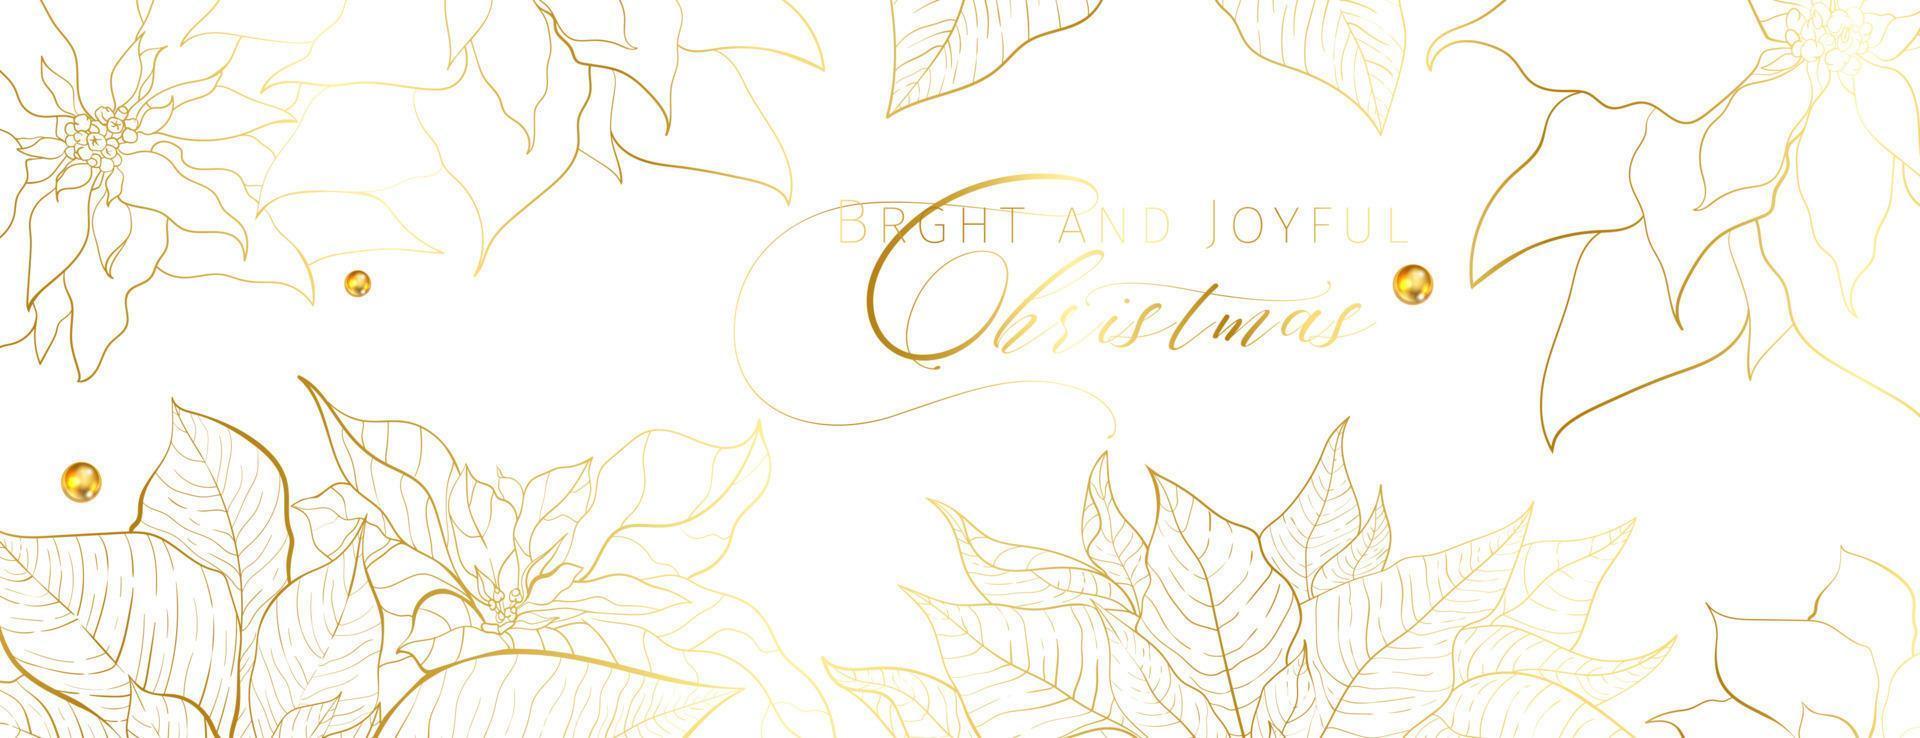 Christmas Golden Poinsettia social network white head banner vector